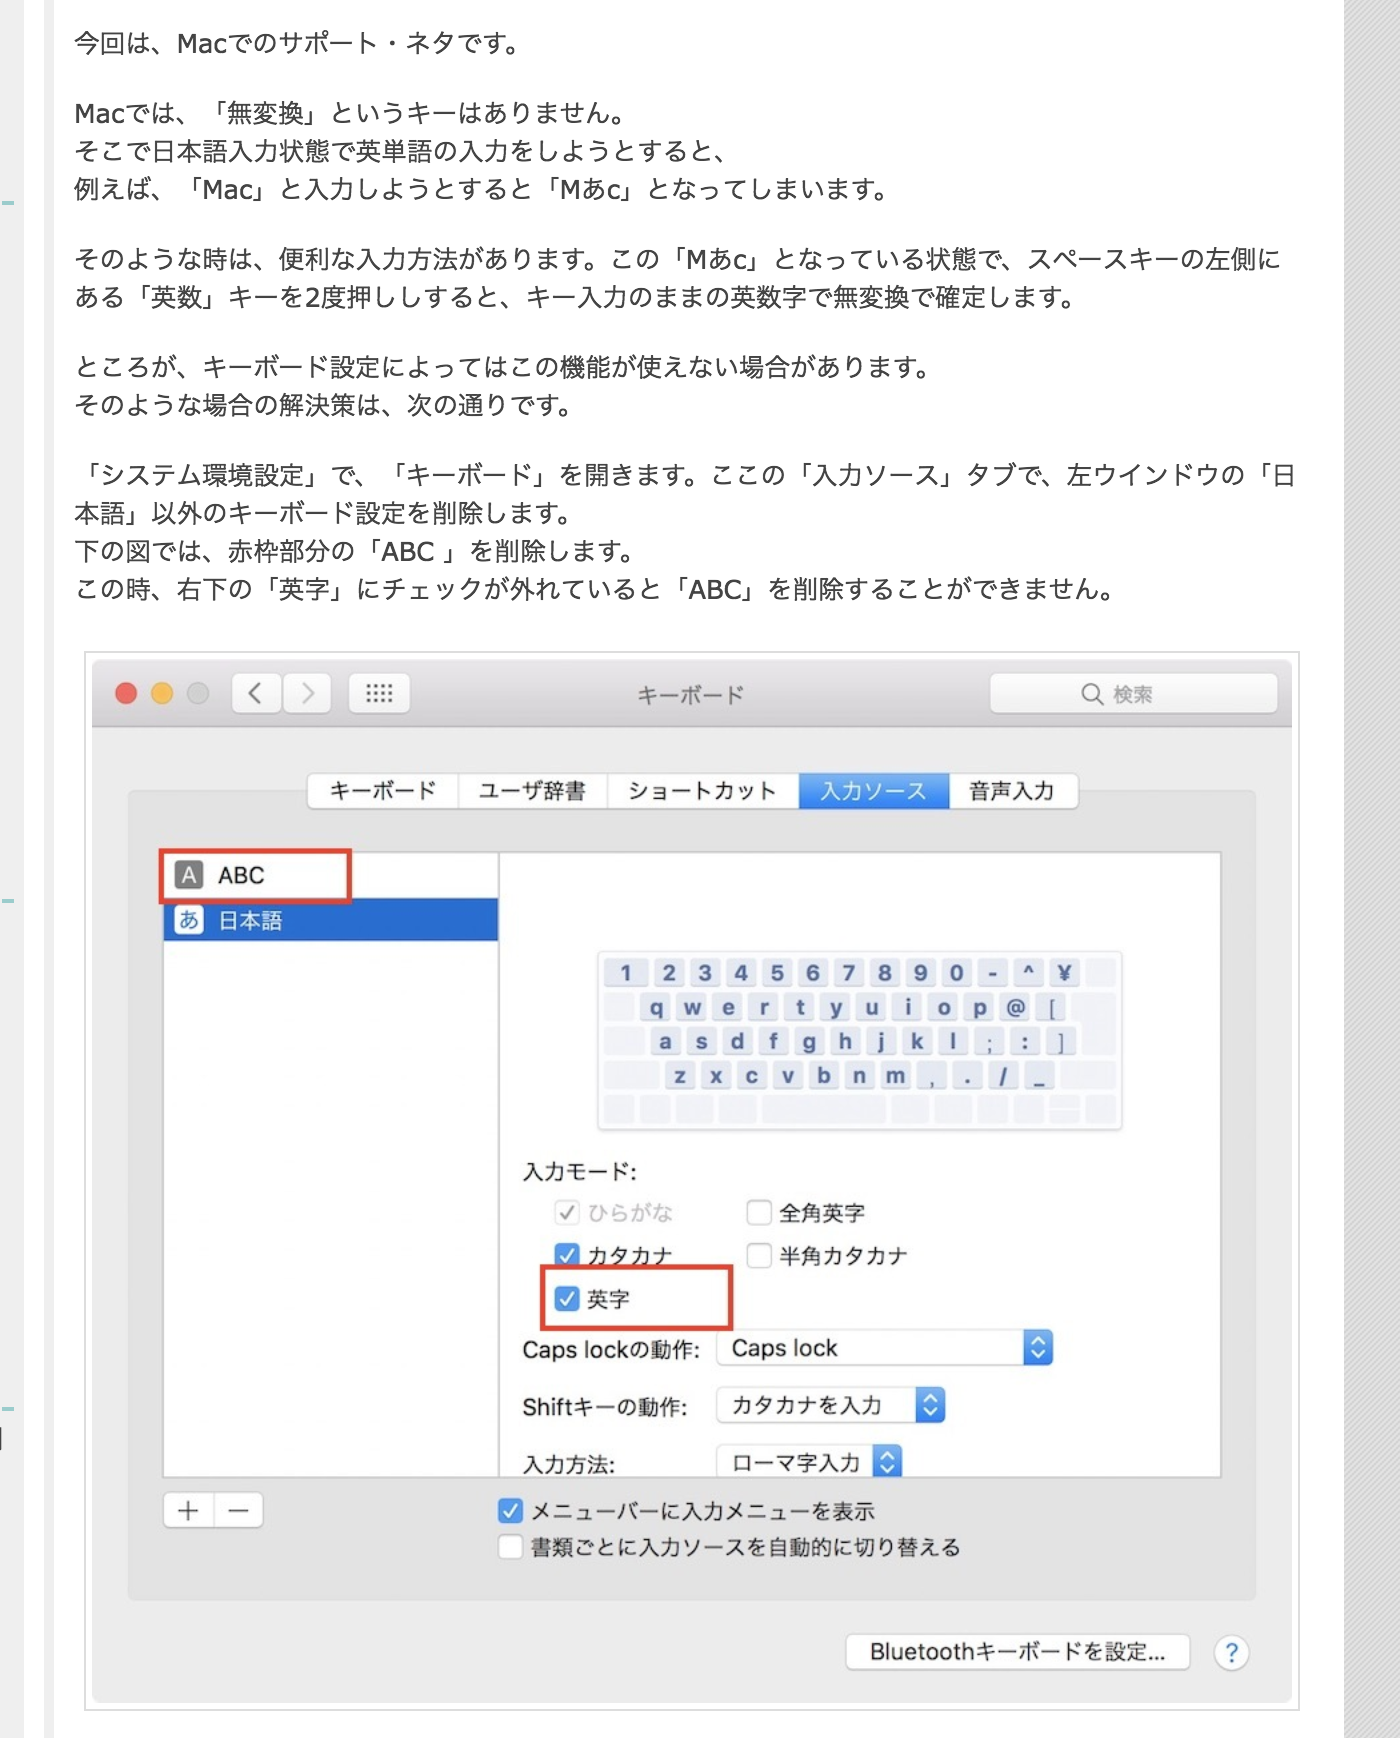 Mac用 Apple英字配列 Us キーボードにおける日本語入力切替のおすすめ Commandキーのみで実現 Qiita